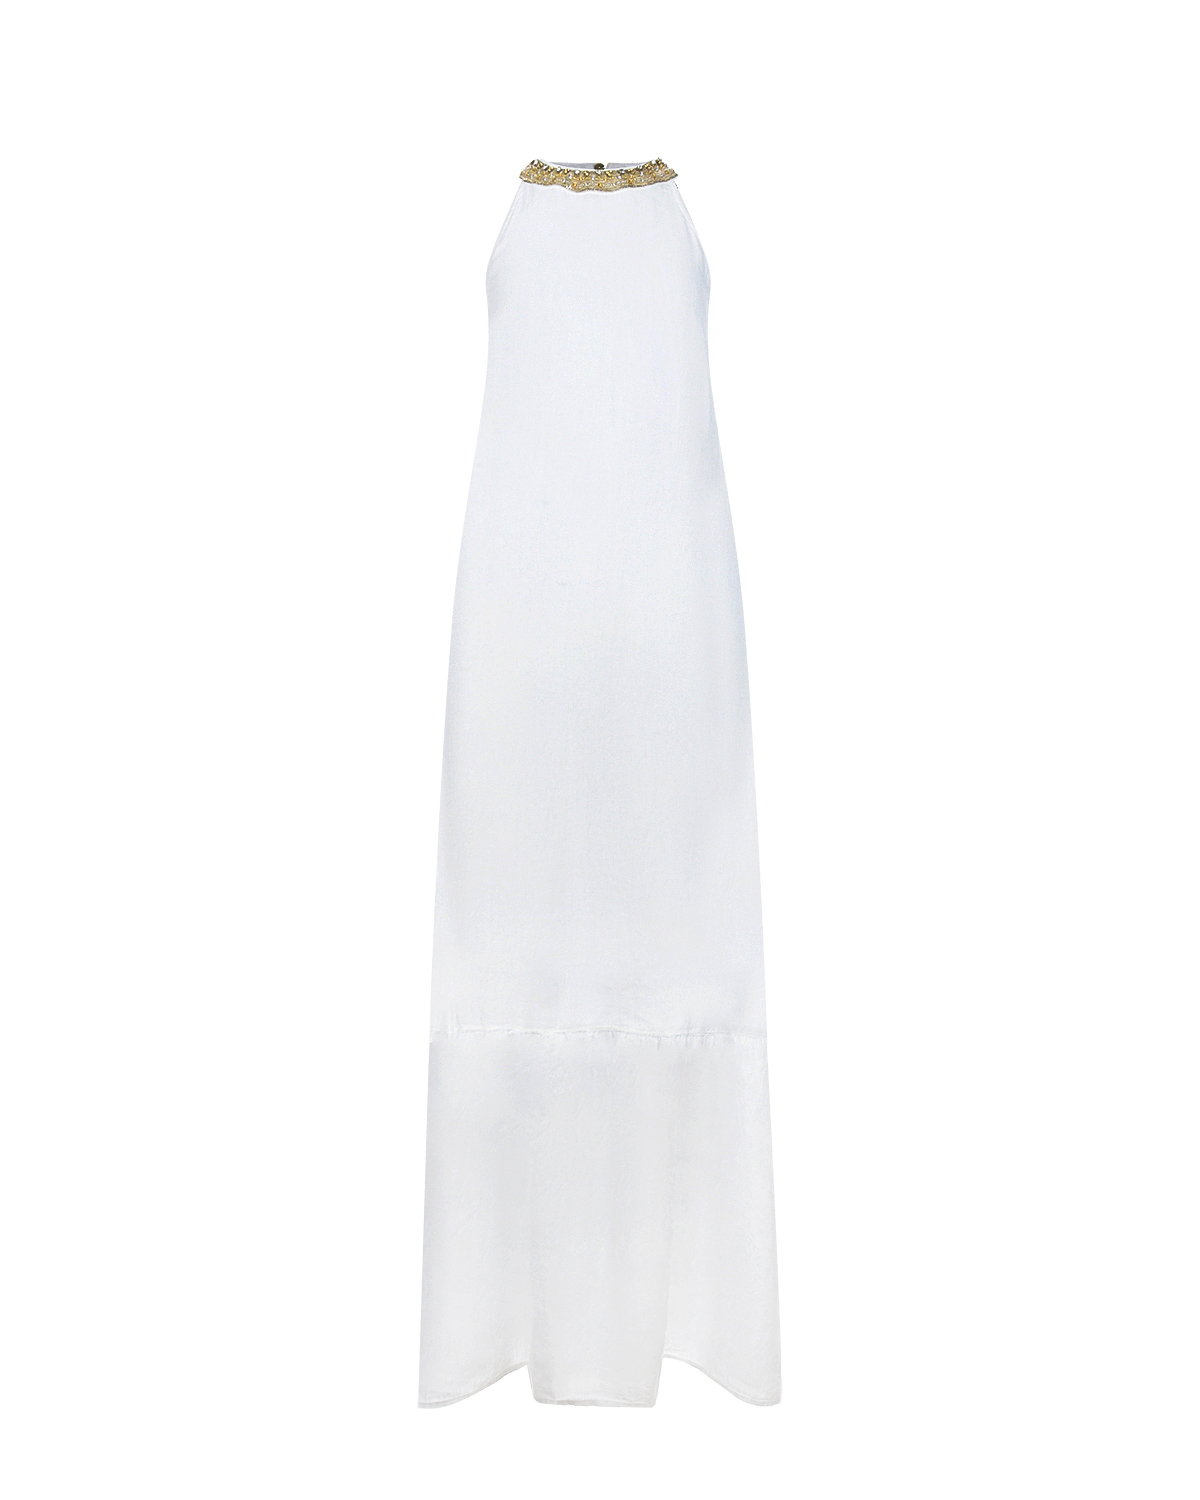 Белое платье со стразами 120% Lino, размер 42, цвет белый - фото 1